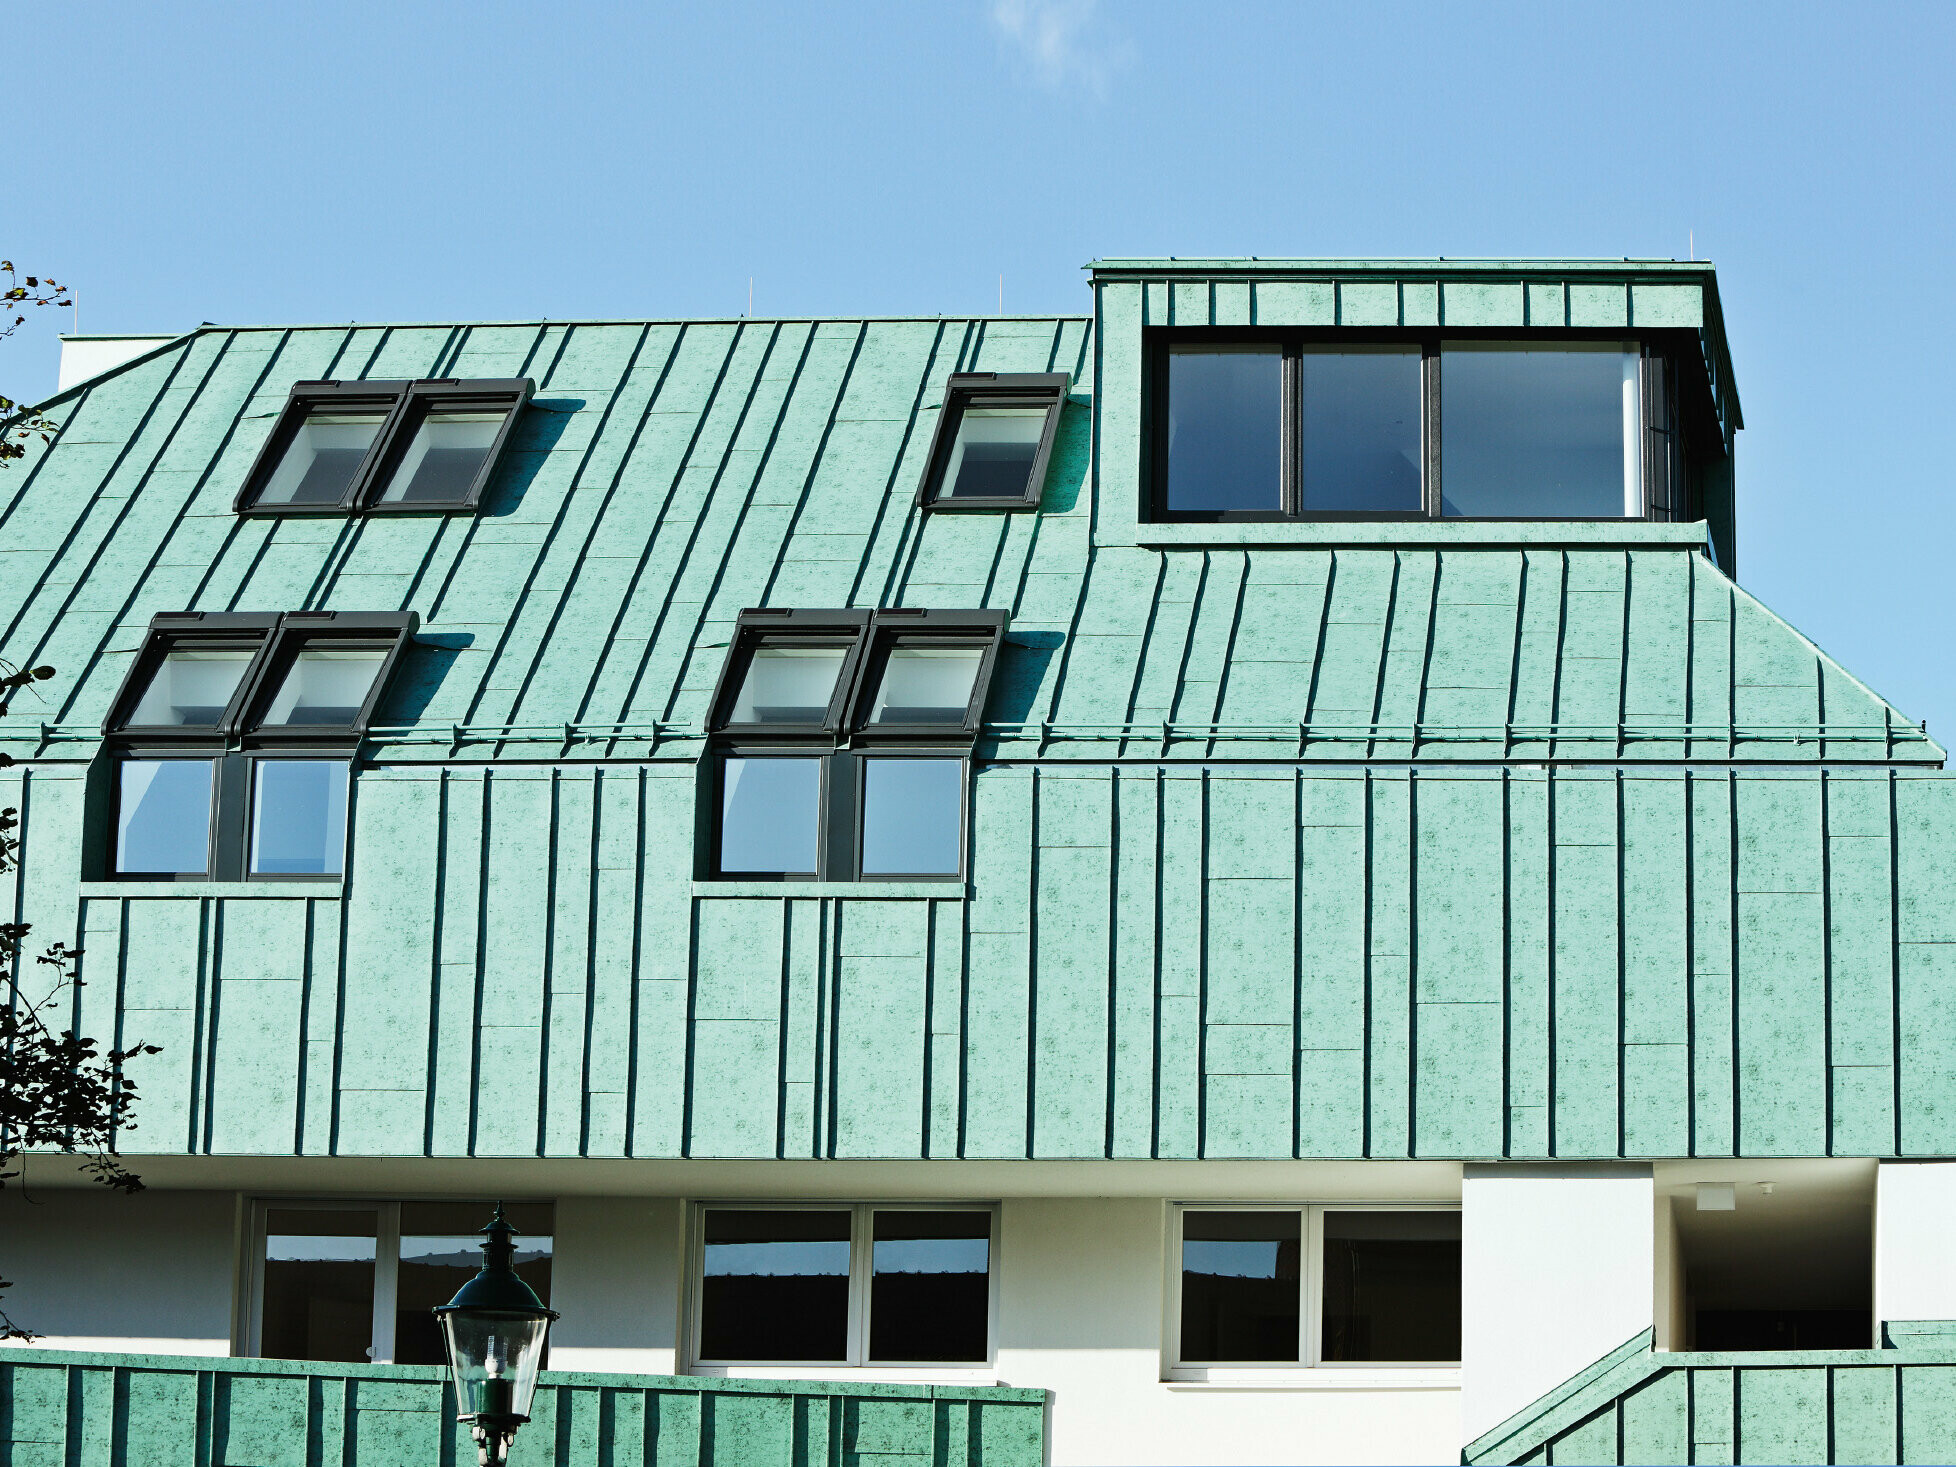 Riešenie strechy a fasády so systémom PREFALZ vo farbe patina zelená od spoločnosti PREFA s rôznymi šírkami pásov